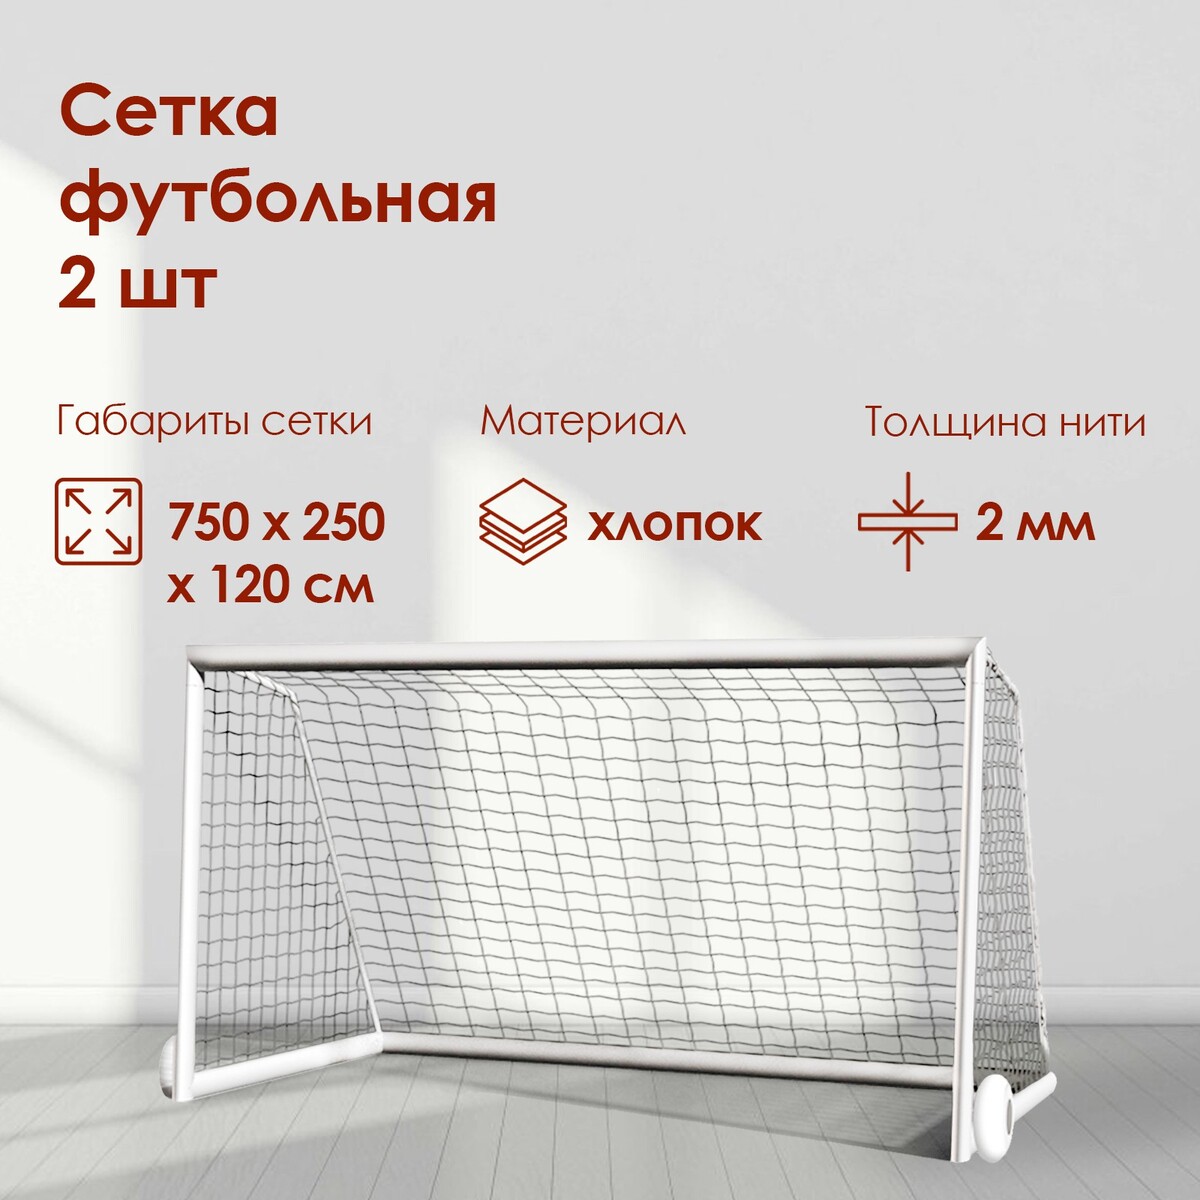 Сетка футбольная, 7,5х2,5 м, нить 2 мм, 2 шт. сетка баскетбольная torres ss110105 нить 6 мм